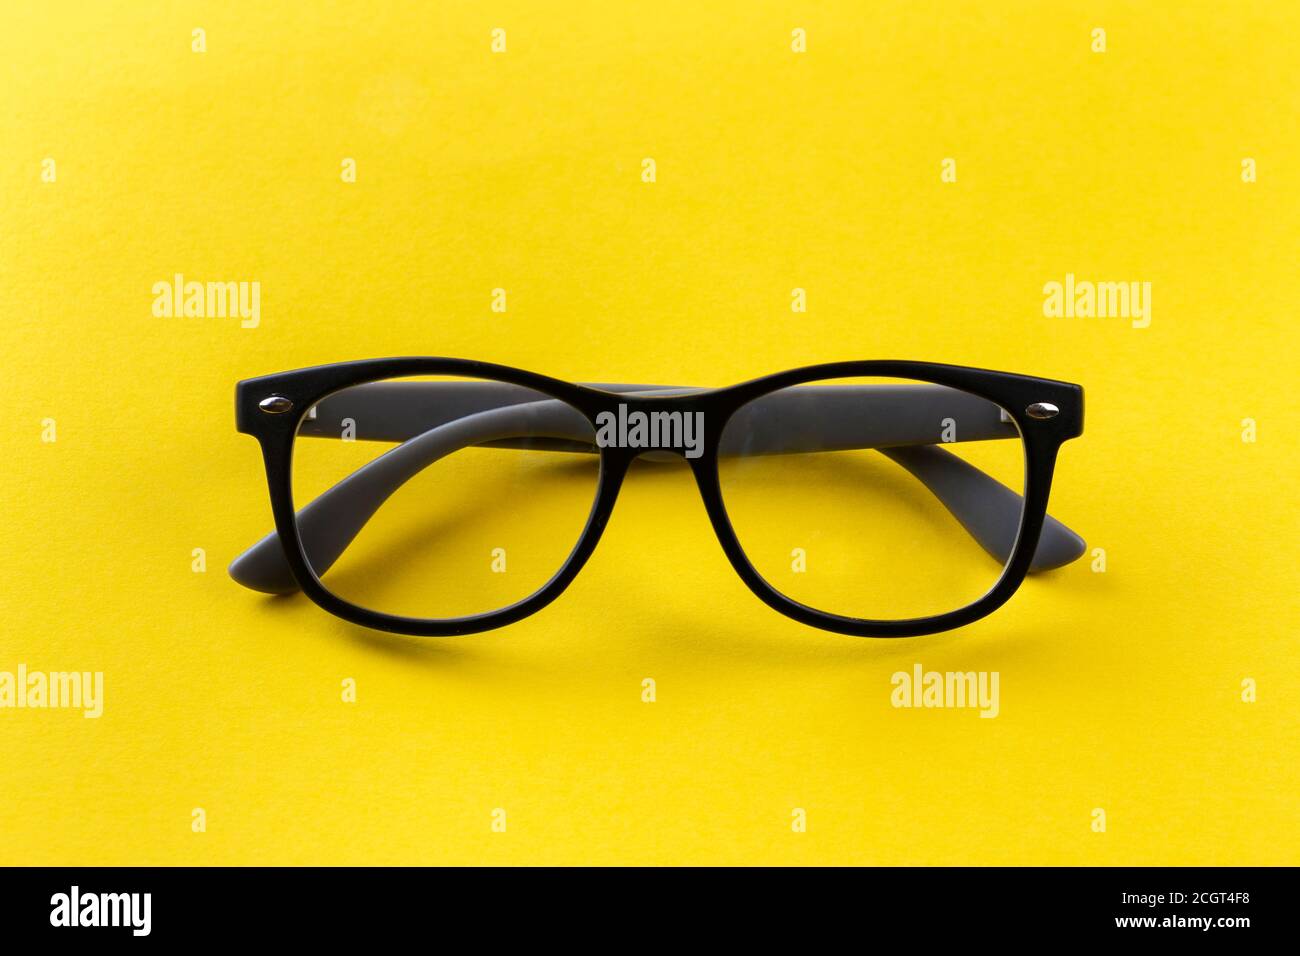 Brille für die Sicht in schwarzen Rahmen auf gelbem Hintergrund.  Kurzsichtige und Presbyopie (Weitsichtigkeit) Brillen Stockfotografie -  Alamy